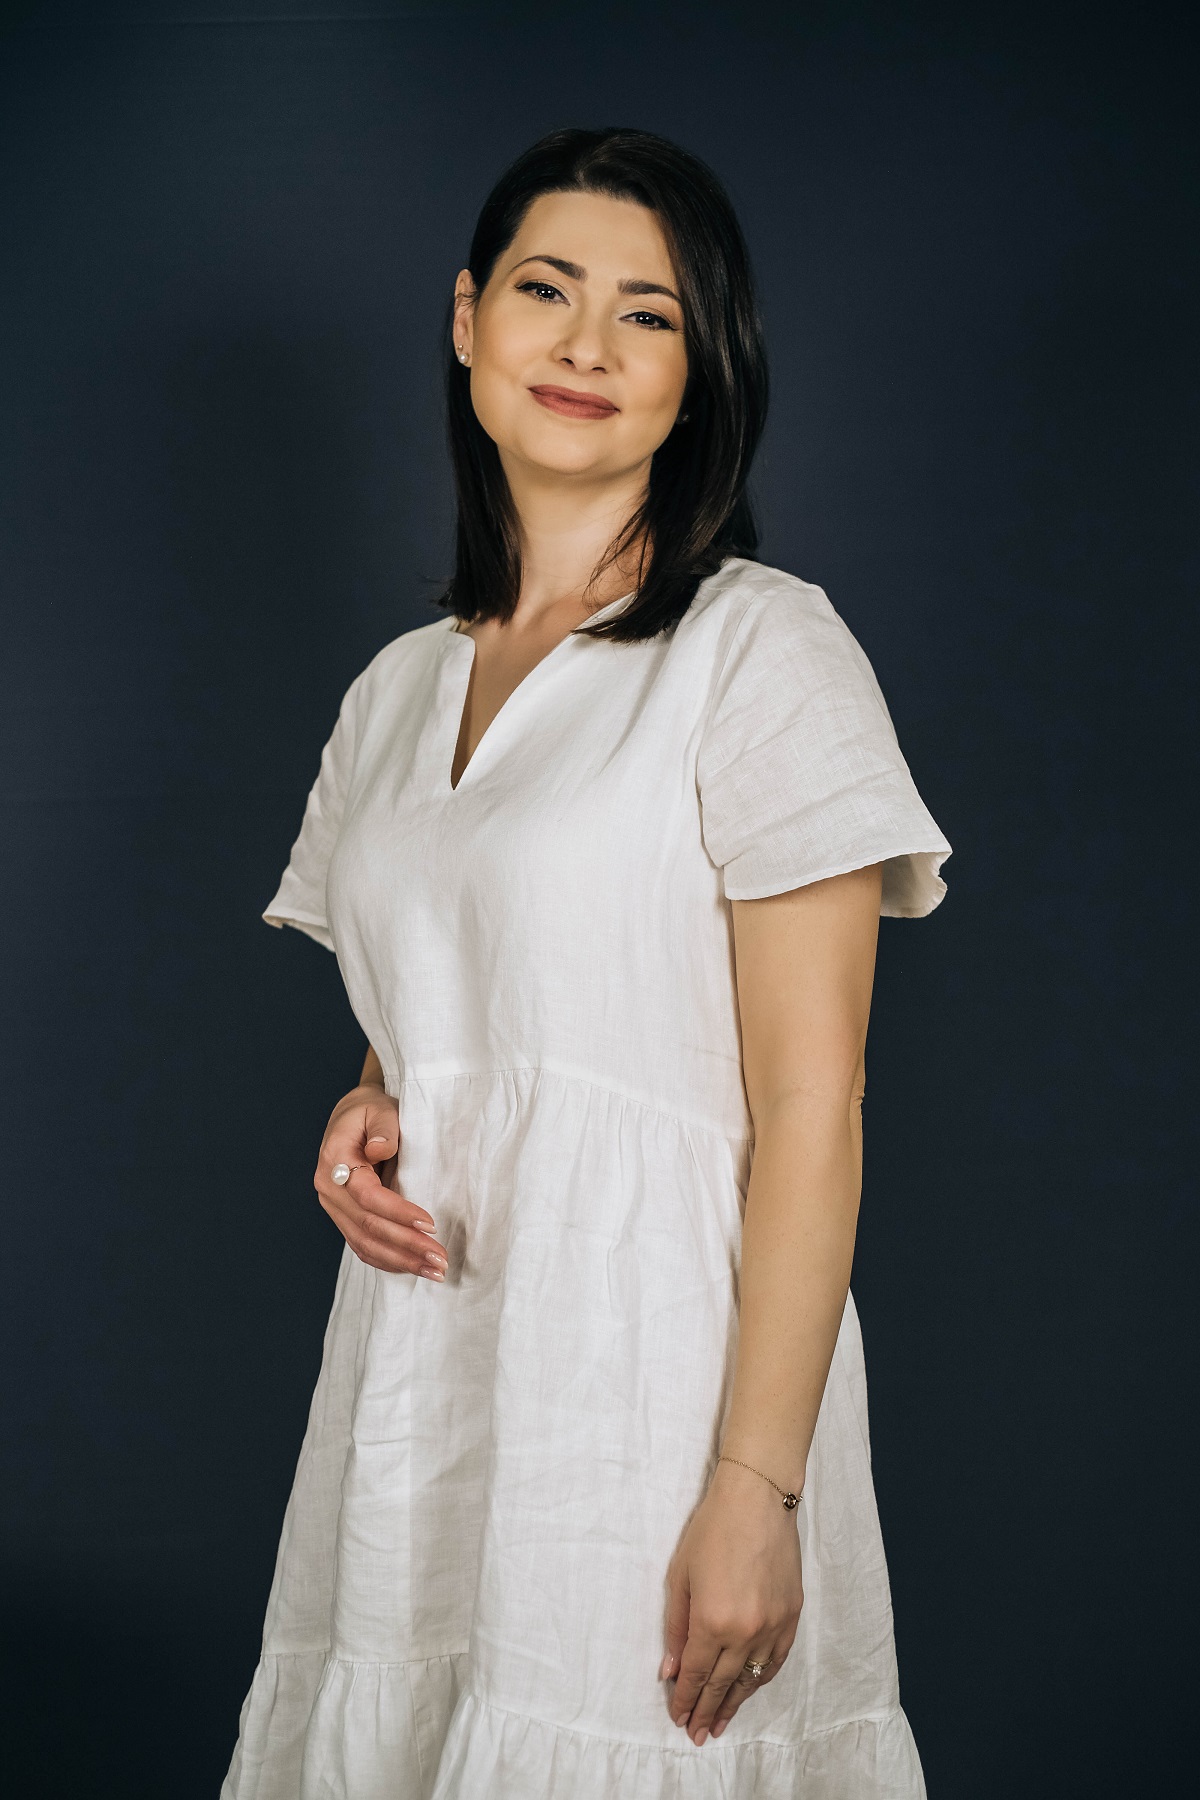 Mihaela Călin într-o rochie albă lungă în timp ce pozează pentru seria DePărinți.ro